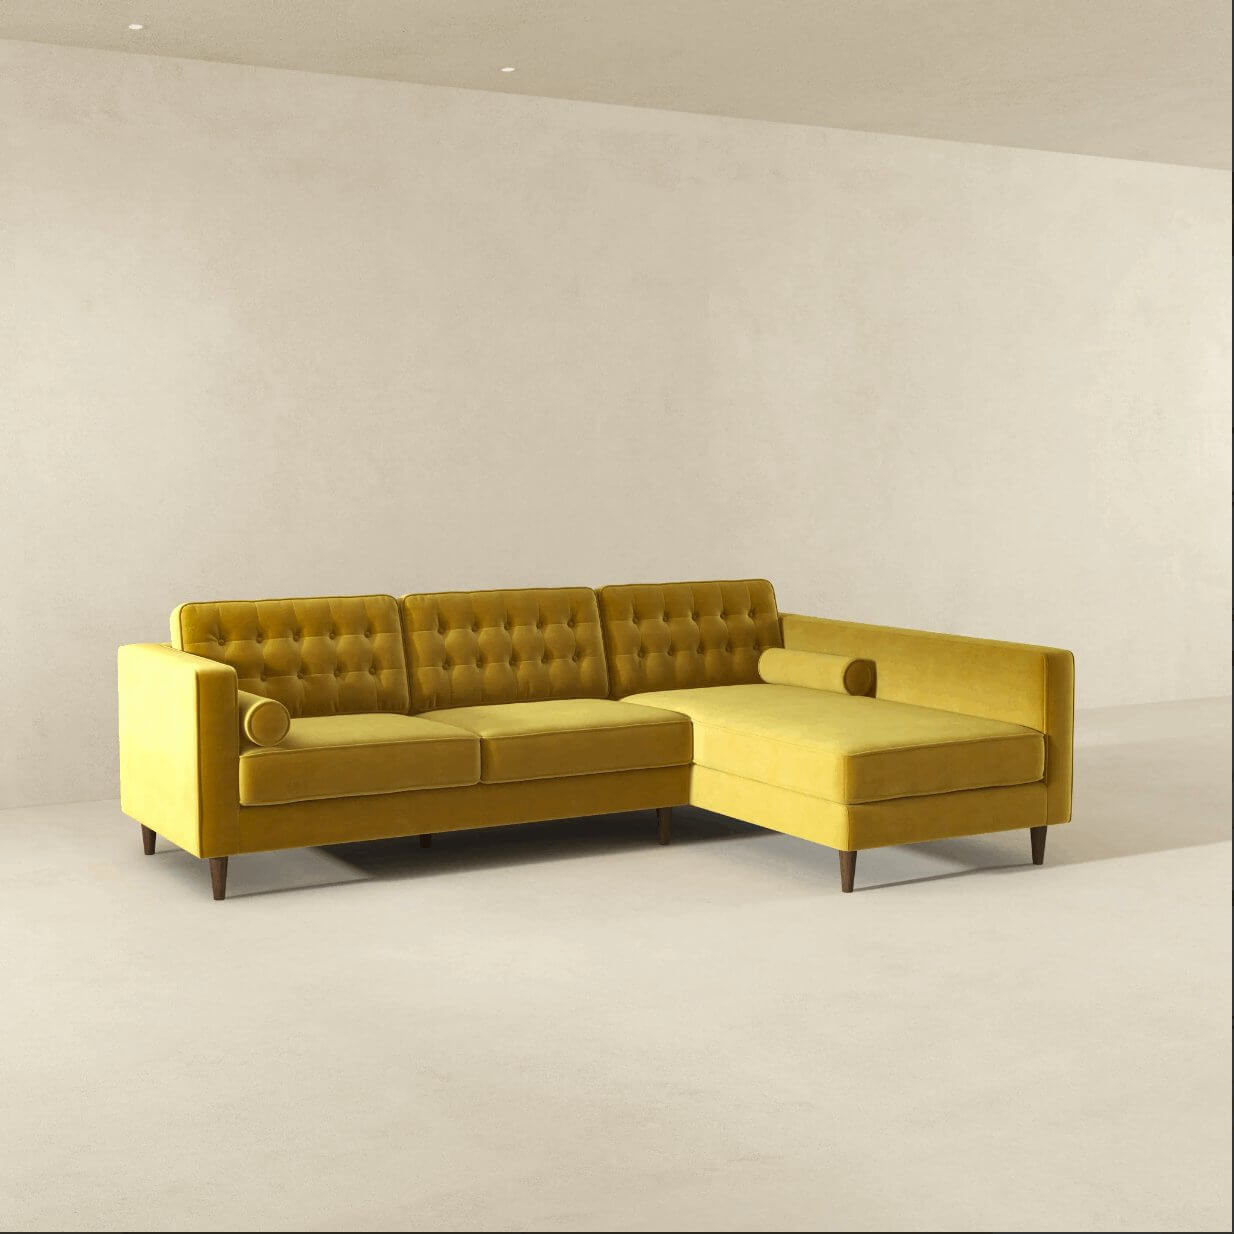 Christian MCM Tufted Velvet Chaise Sectional Sofa 102" - Revel Sofa 